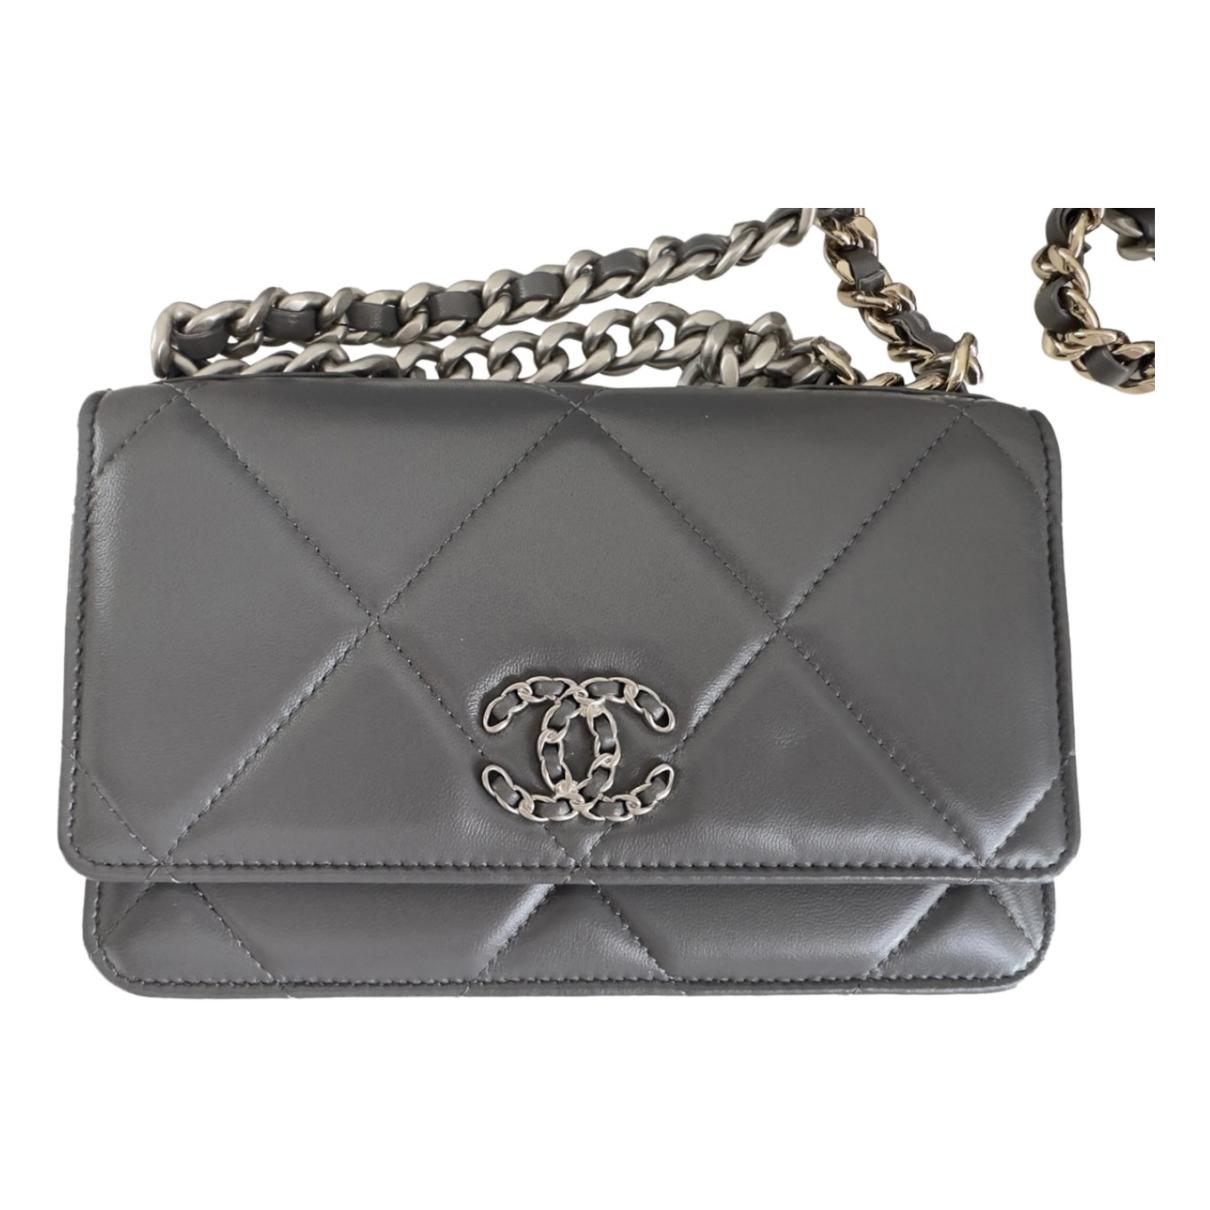 Trendy cc flap handbag Chanel Purple in Not specified - 25511169